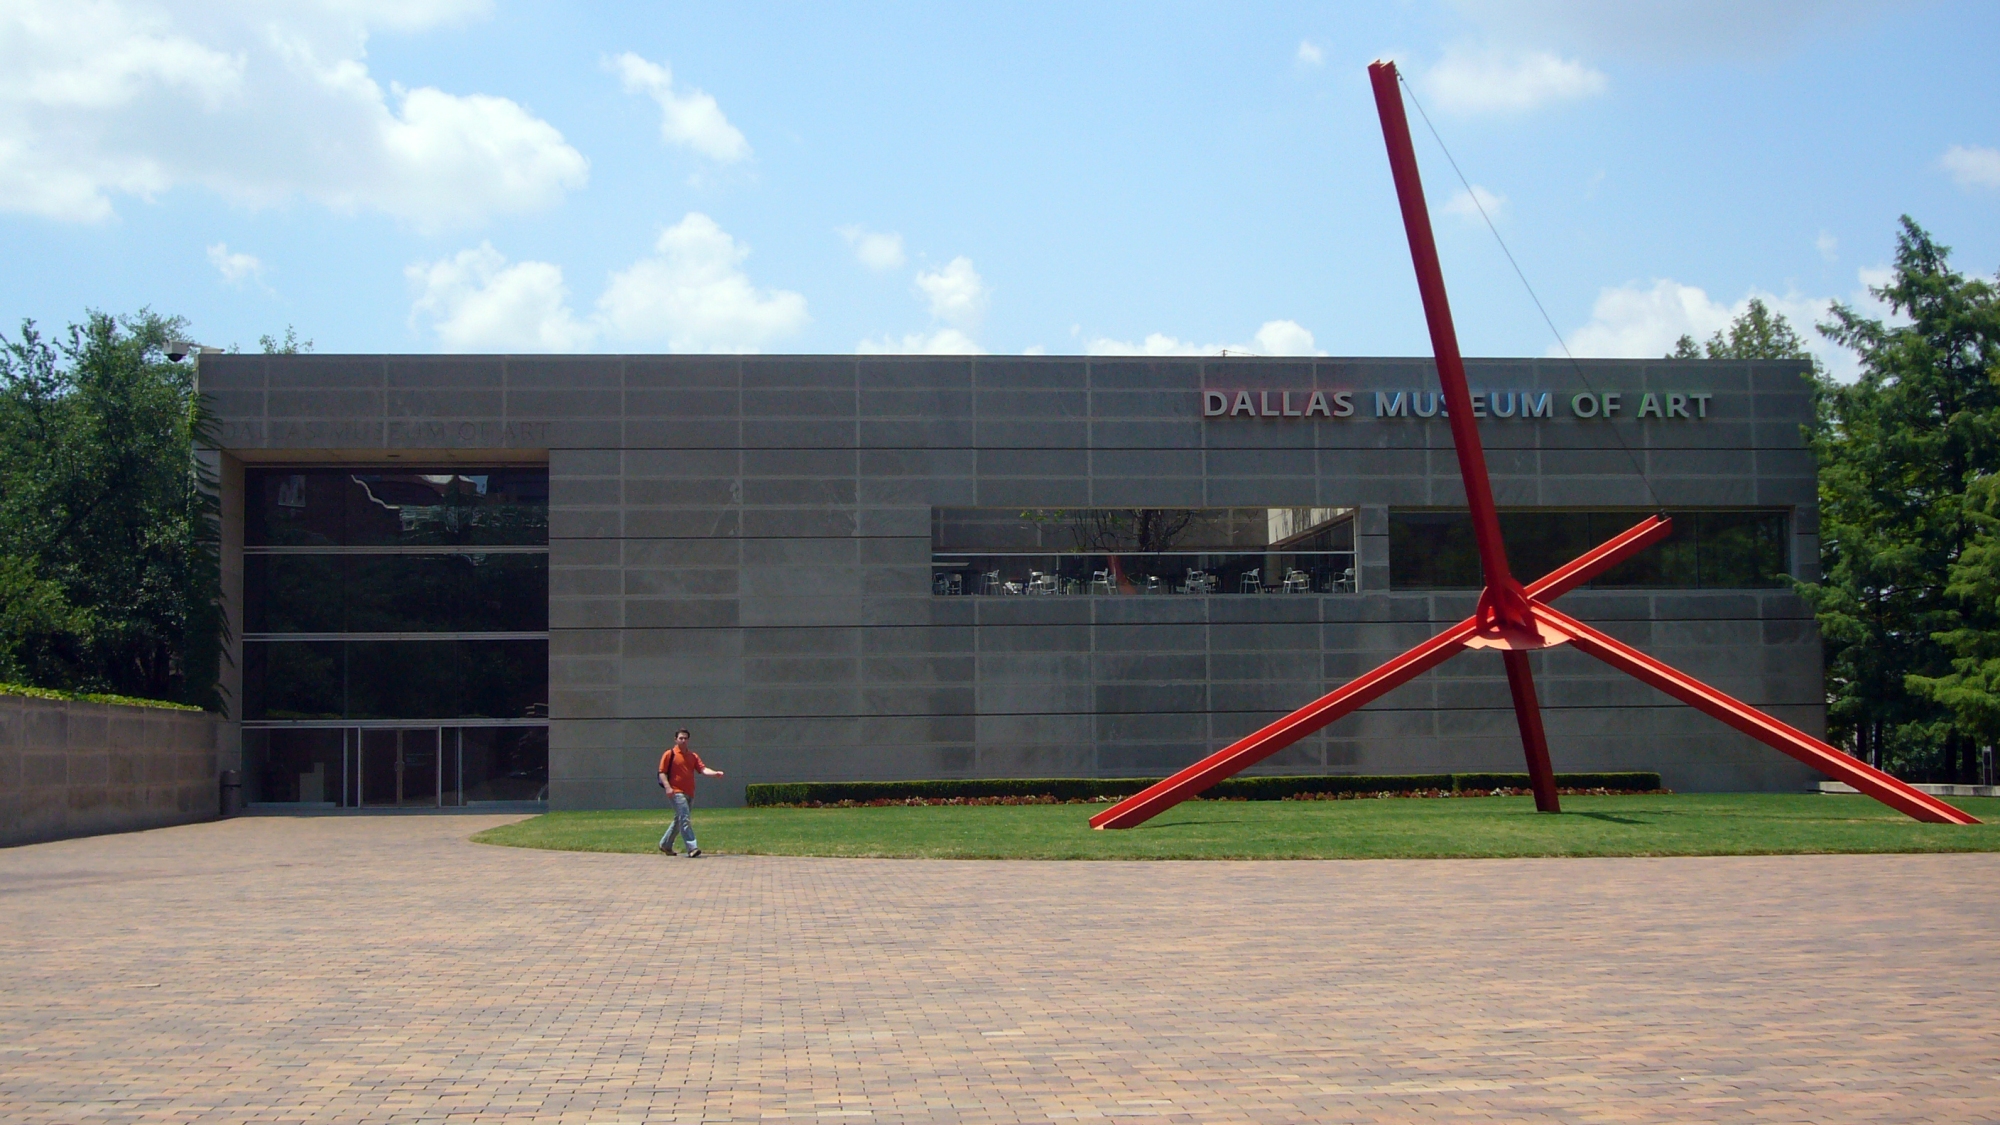 An angular red sculpture stands outside a rectangular building.